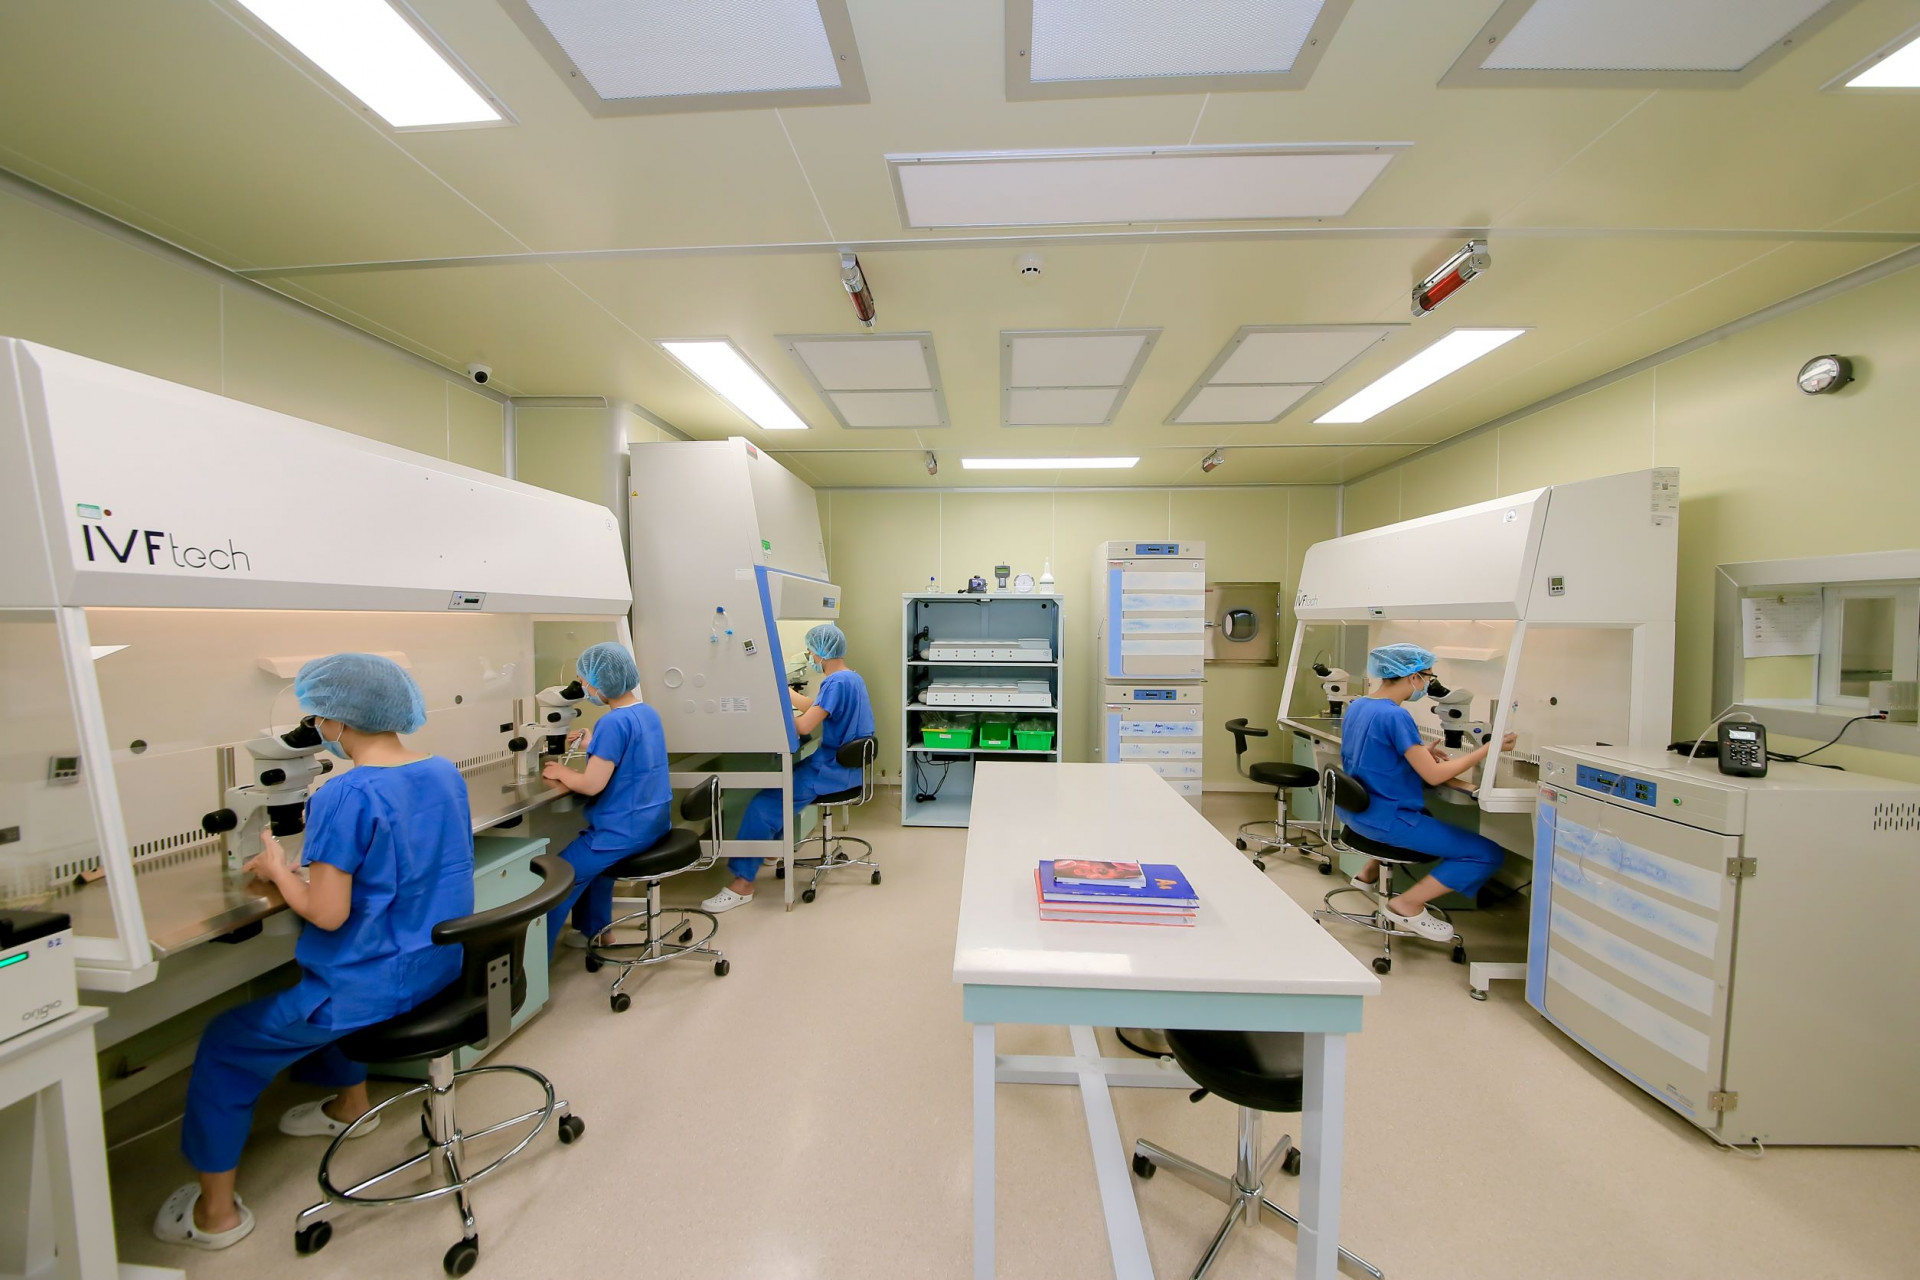 Trung tâm trang bị hệ thống cơ sở vật chất hiện đại bậc nhất với hệ thống phòng lab, tủ cấy và chương trình quản trị chất lượng tiên tiến tương đương với các trung tâm IVF hàng đầu trên thế giới.